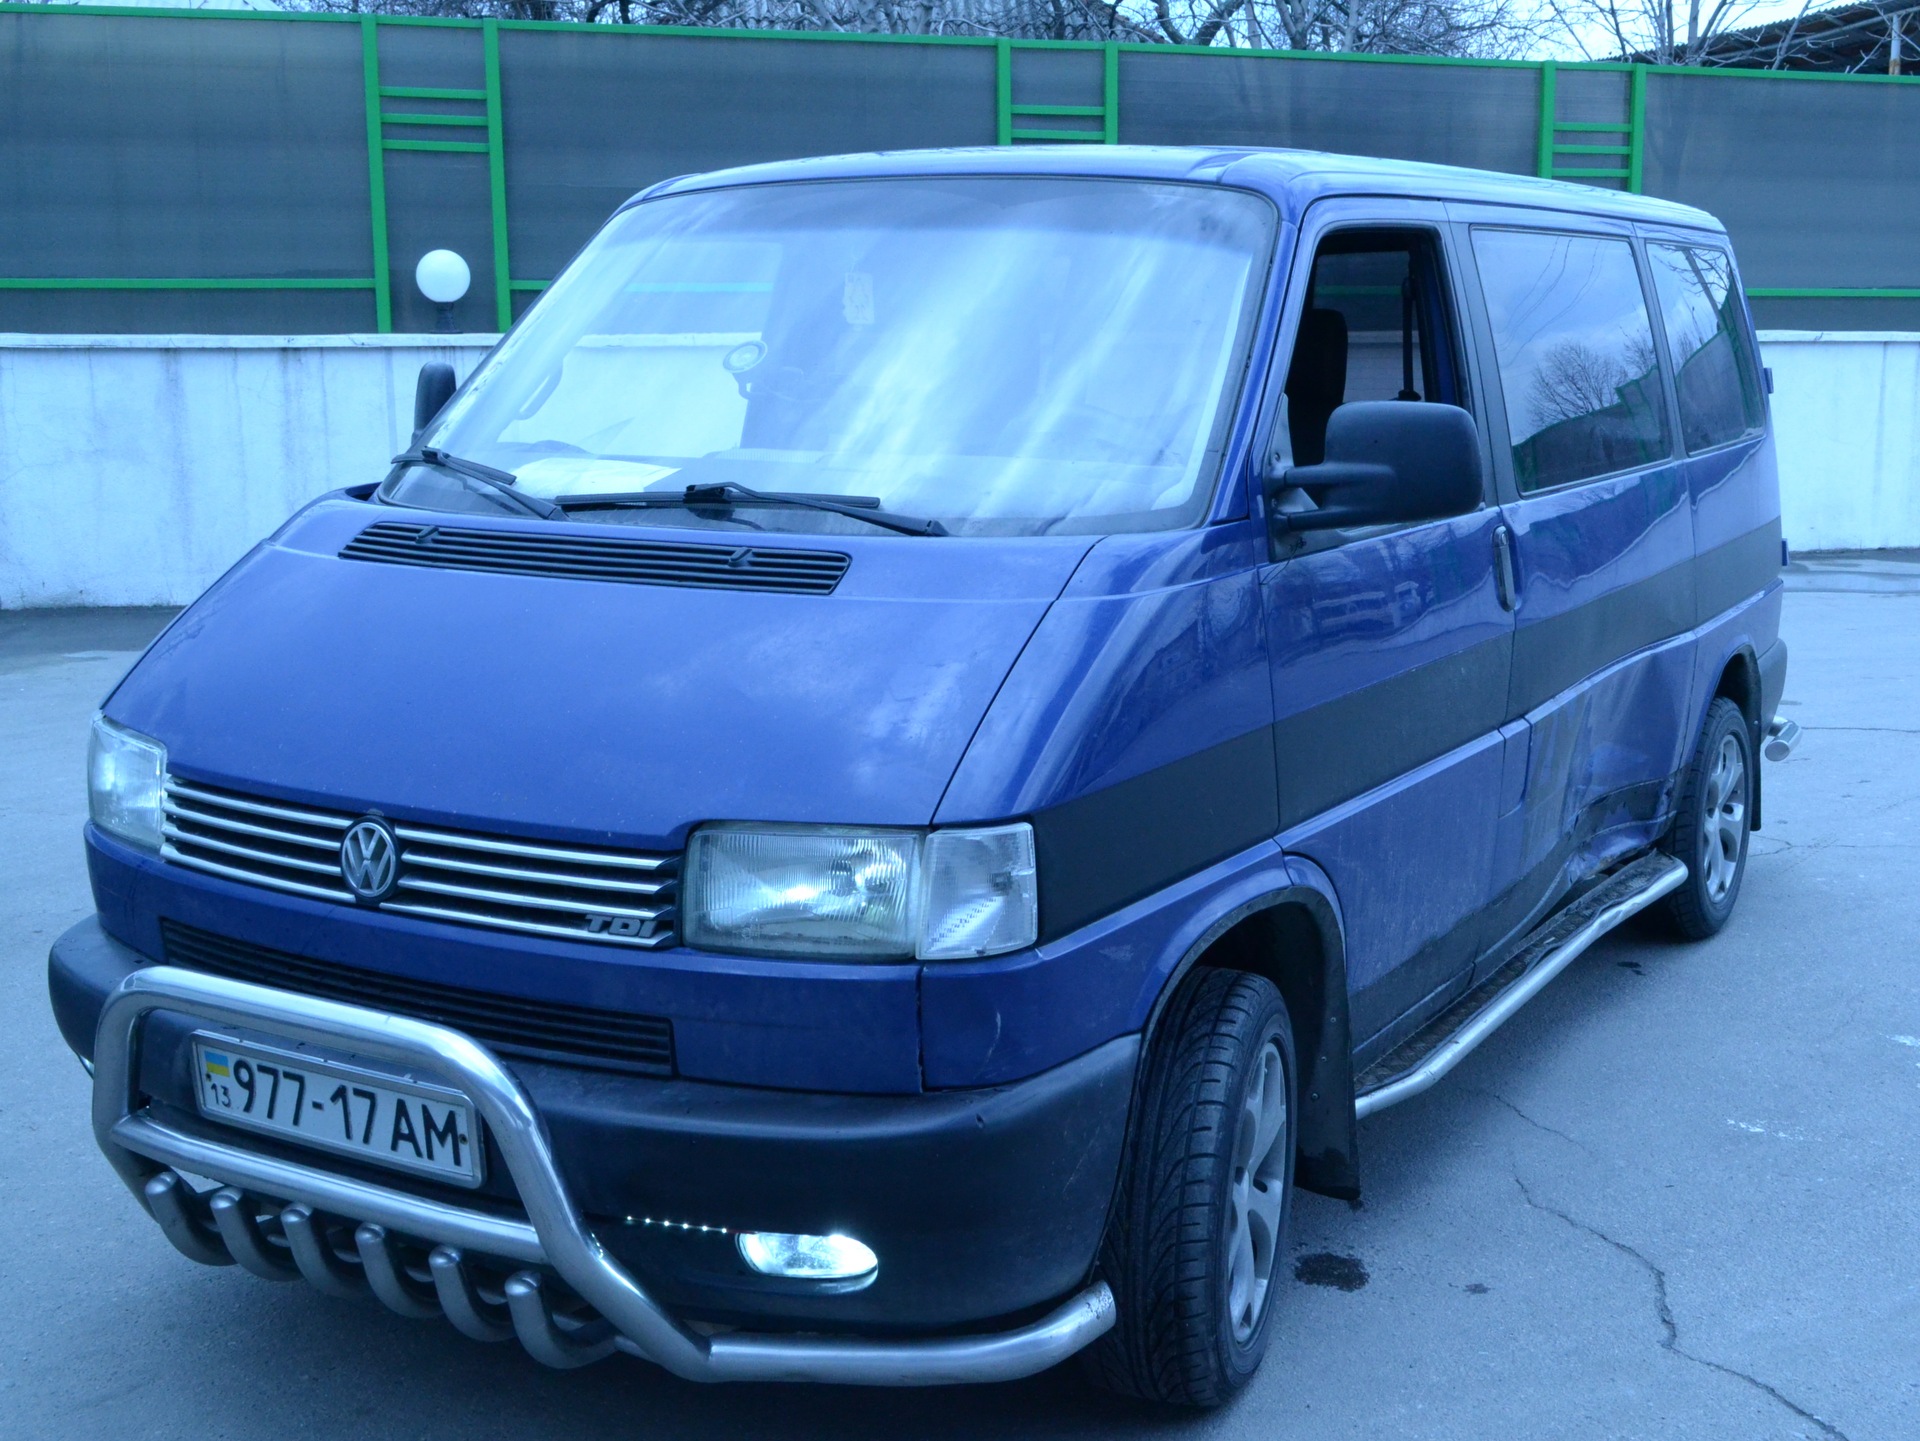 Фольксваген транспортер купить бу в области. Volkswagen t4 2000. Volkswagen Transporter t4 2000 года. Volkswagen Transporter t4 синий. Фолъксвагентранспор терт4.